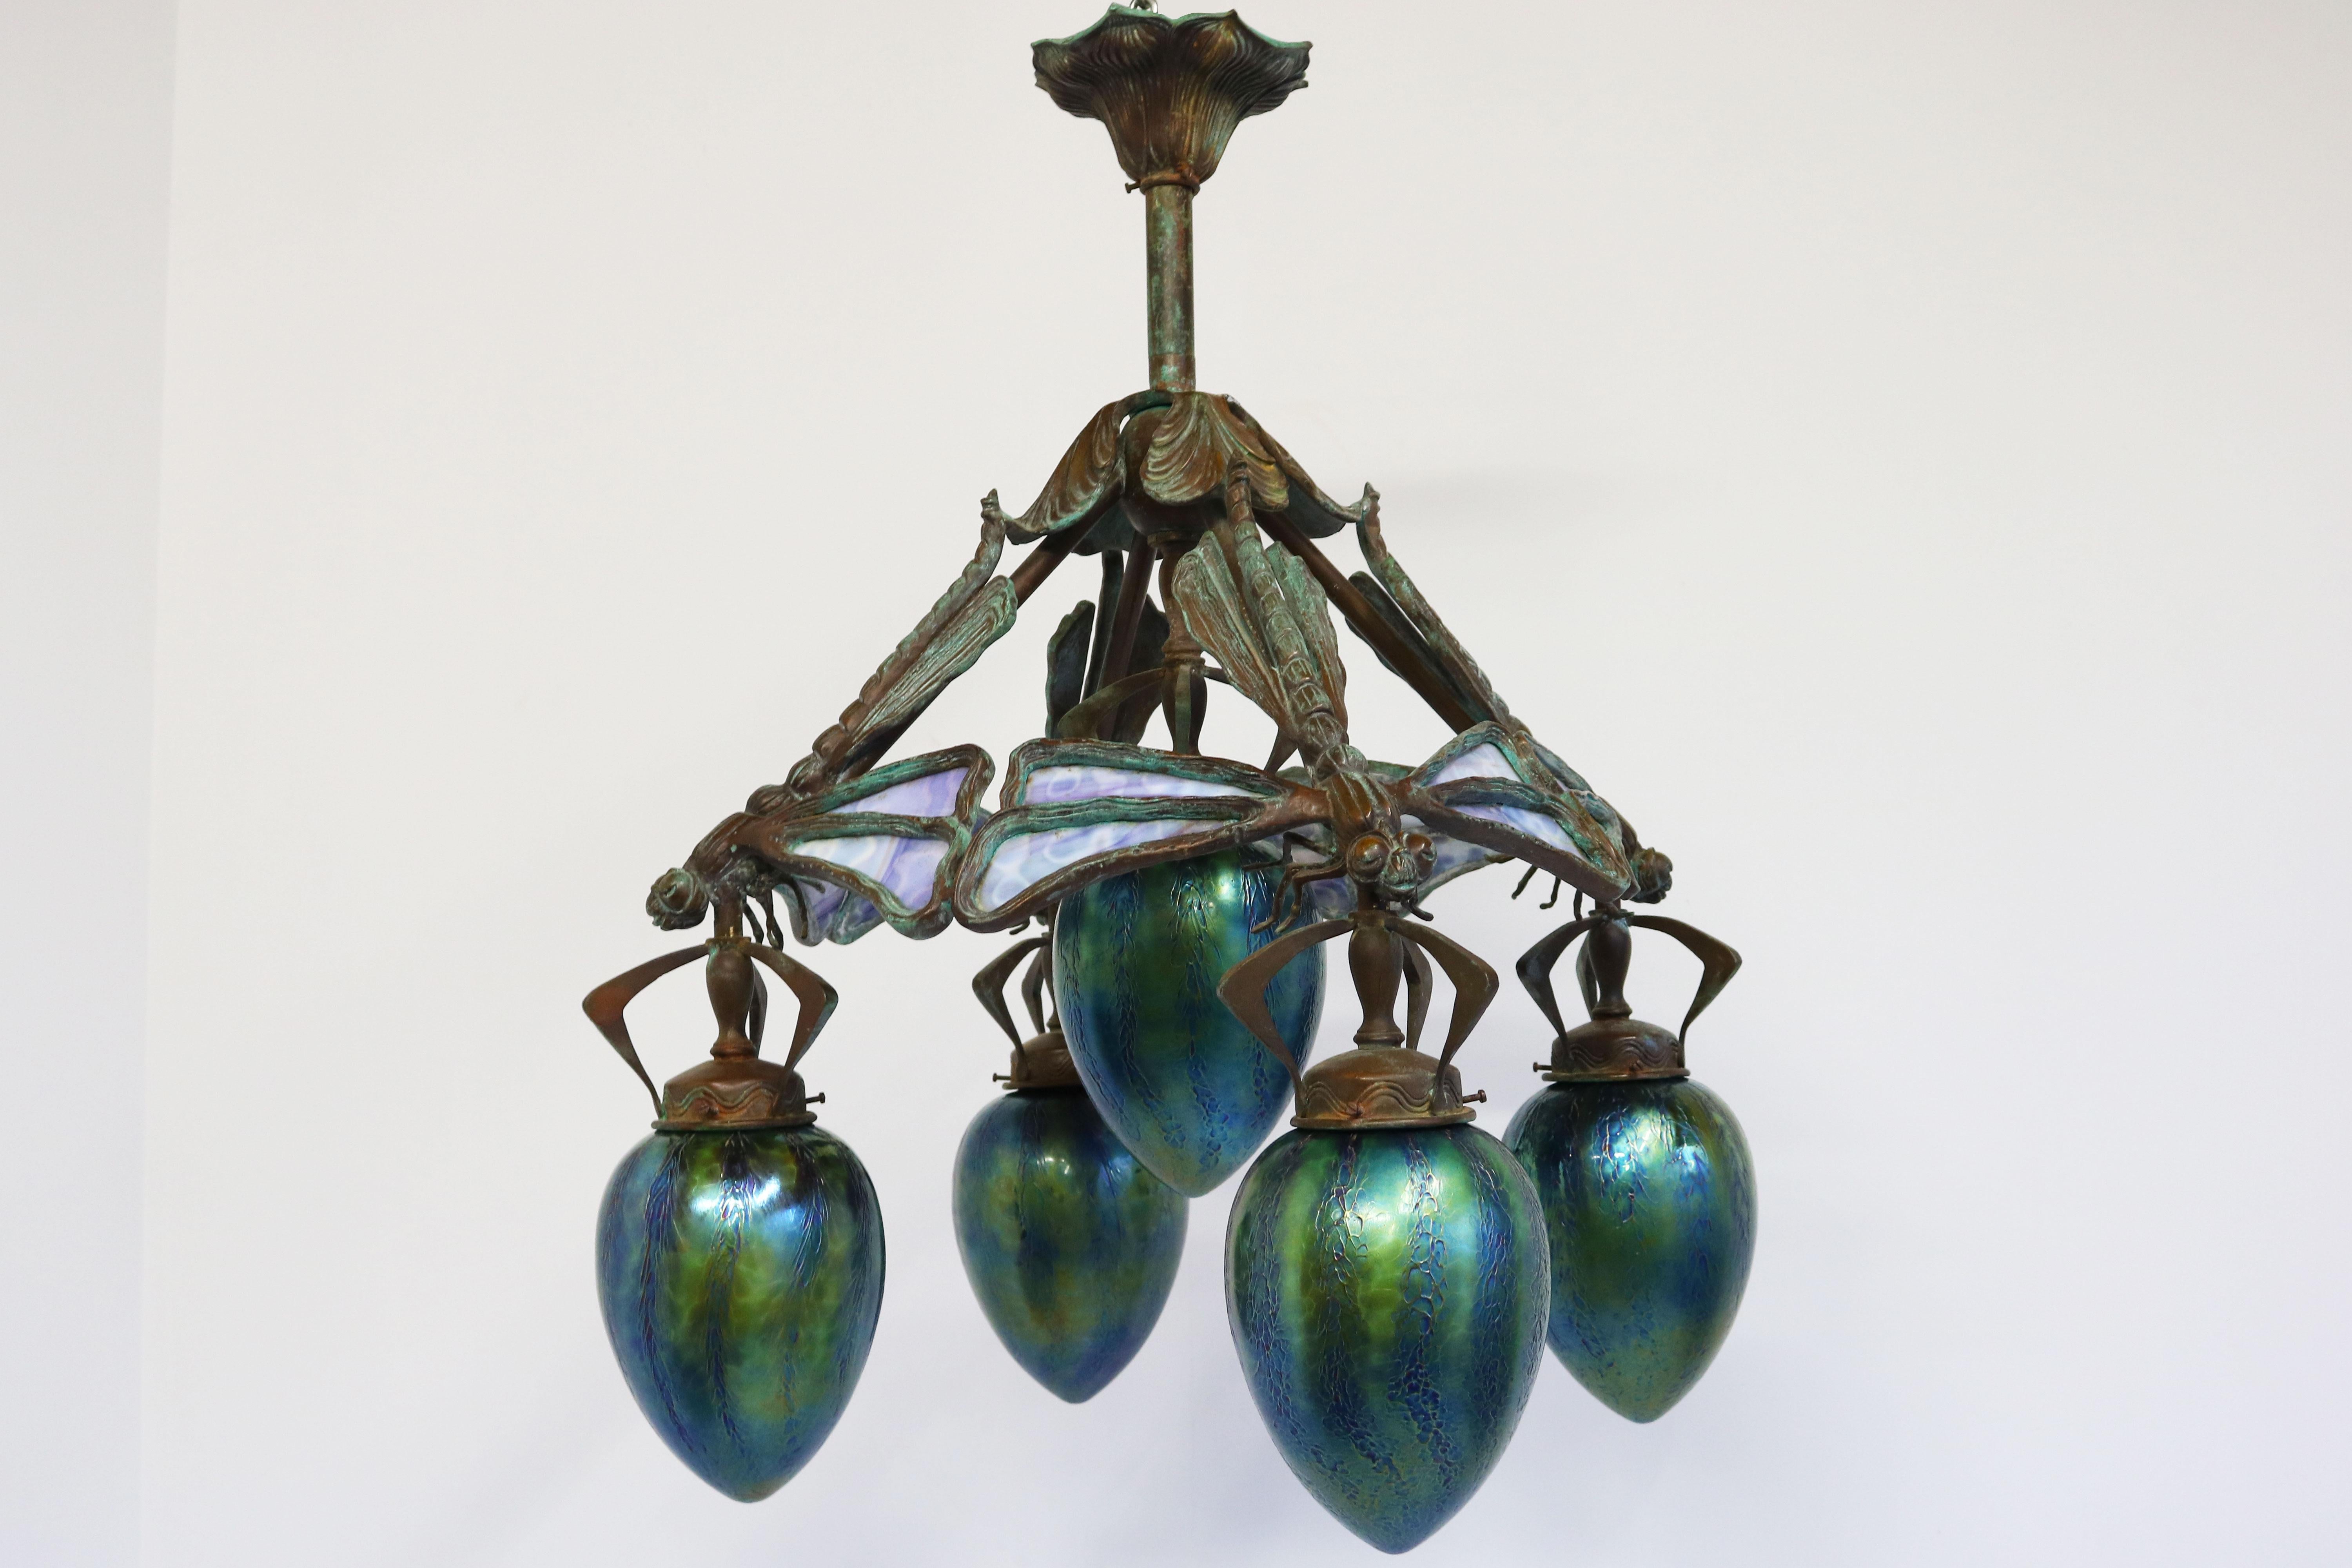 French Art Nouveau dragonfly chandelier 1900 Jugendstil Bronze Iridescent Glass 1